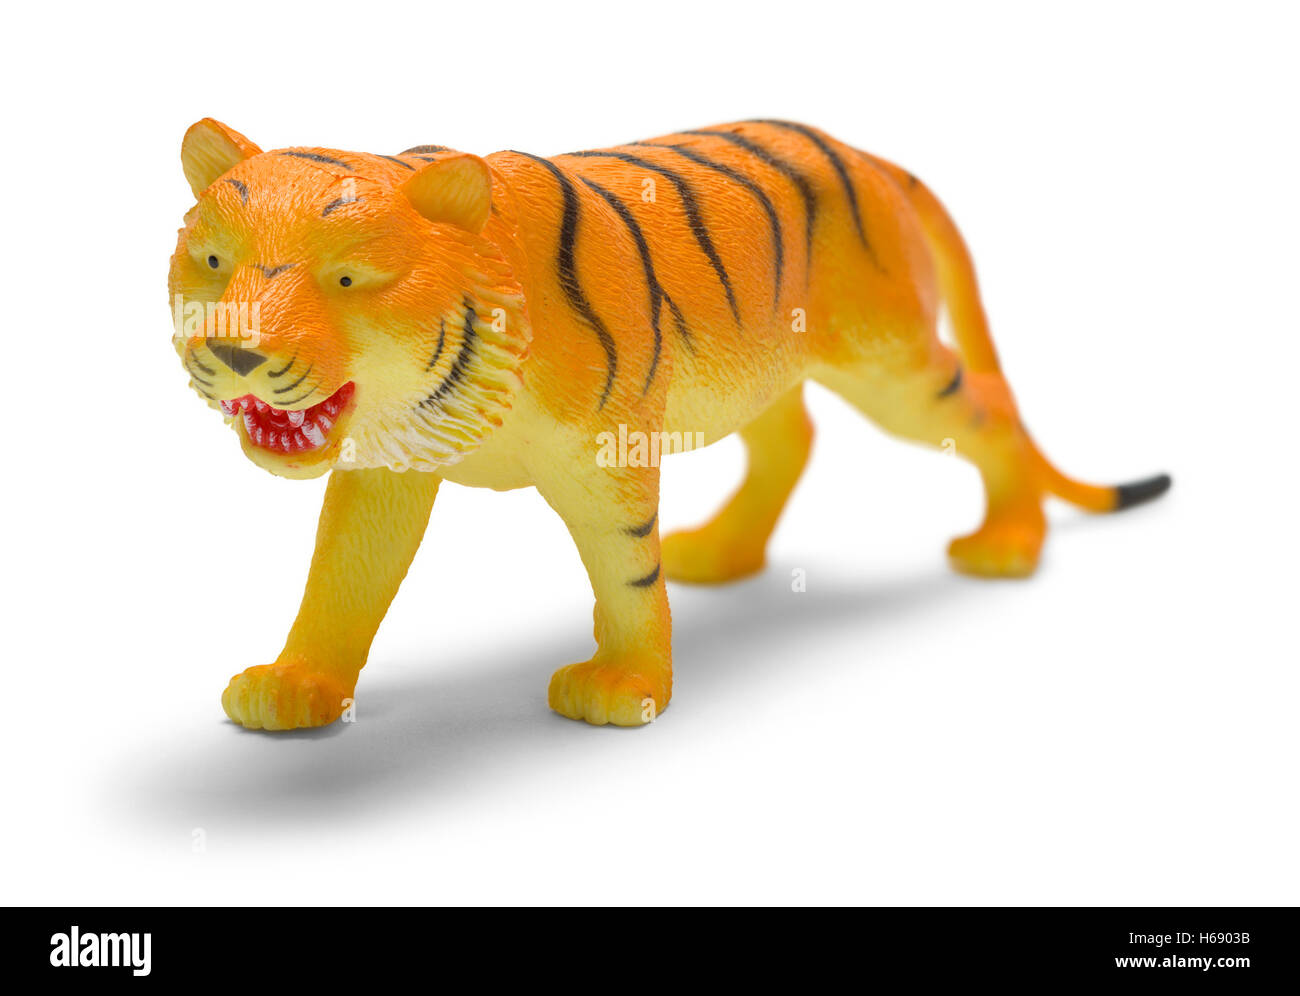 Tigre de juguete de plástico aislado sobre fondo blanco. Foto de stock